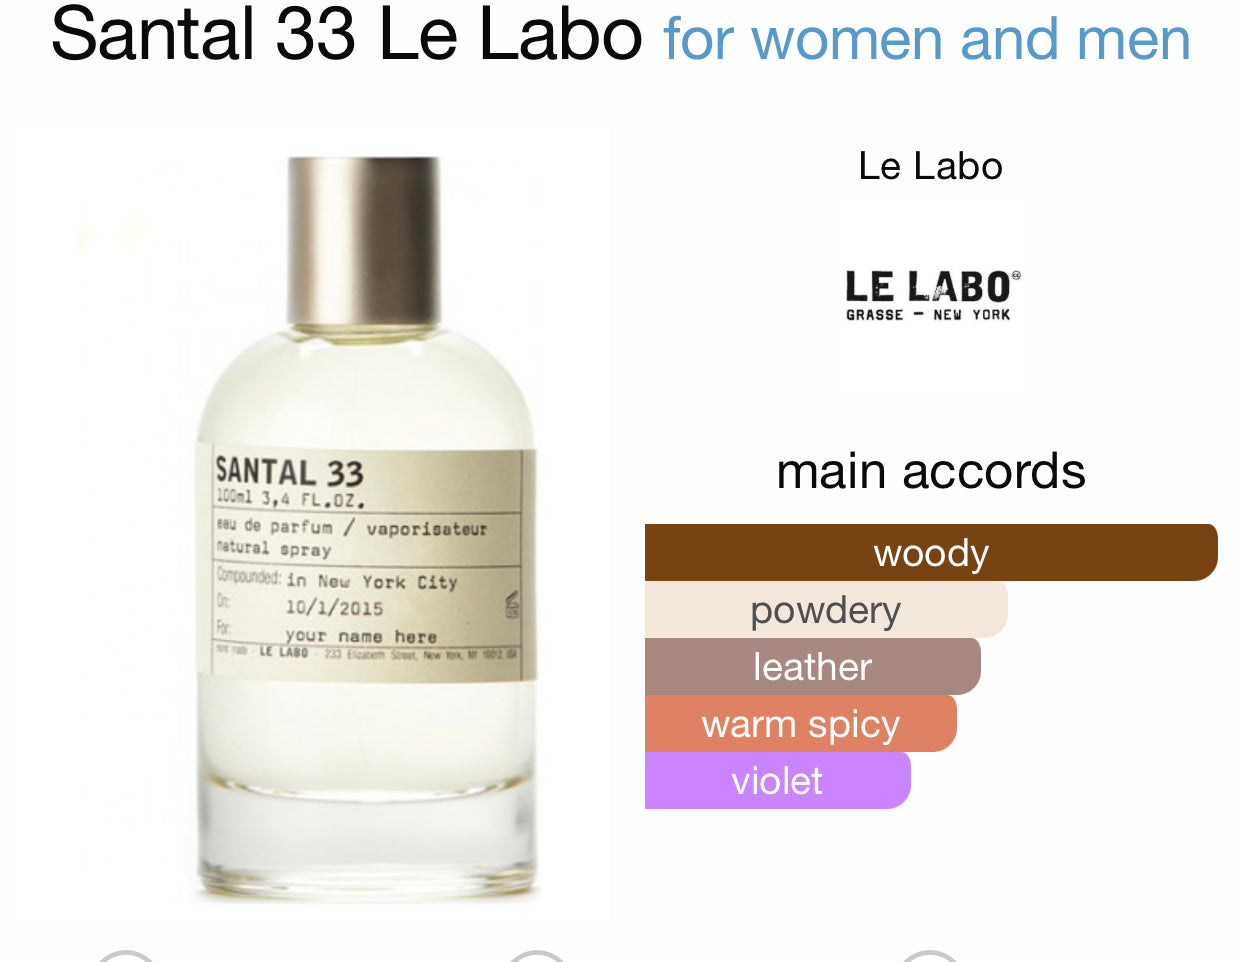 Inspired by Santal 33 Eau de Parfum